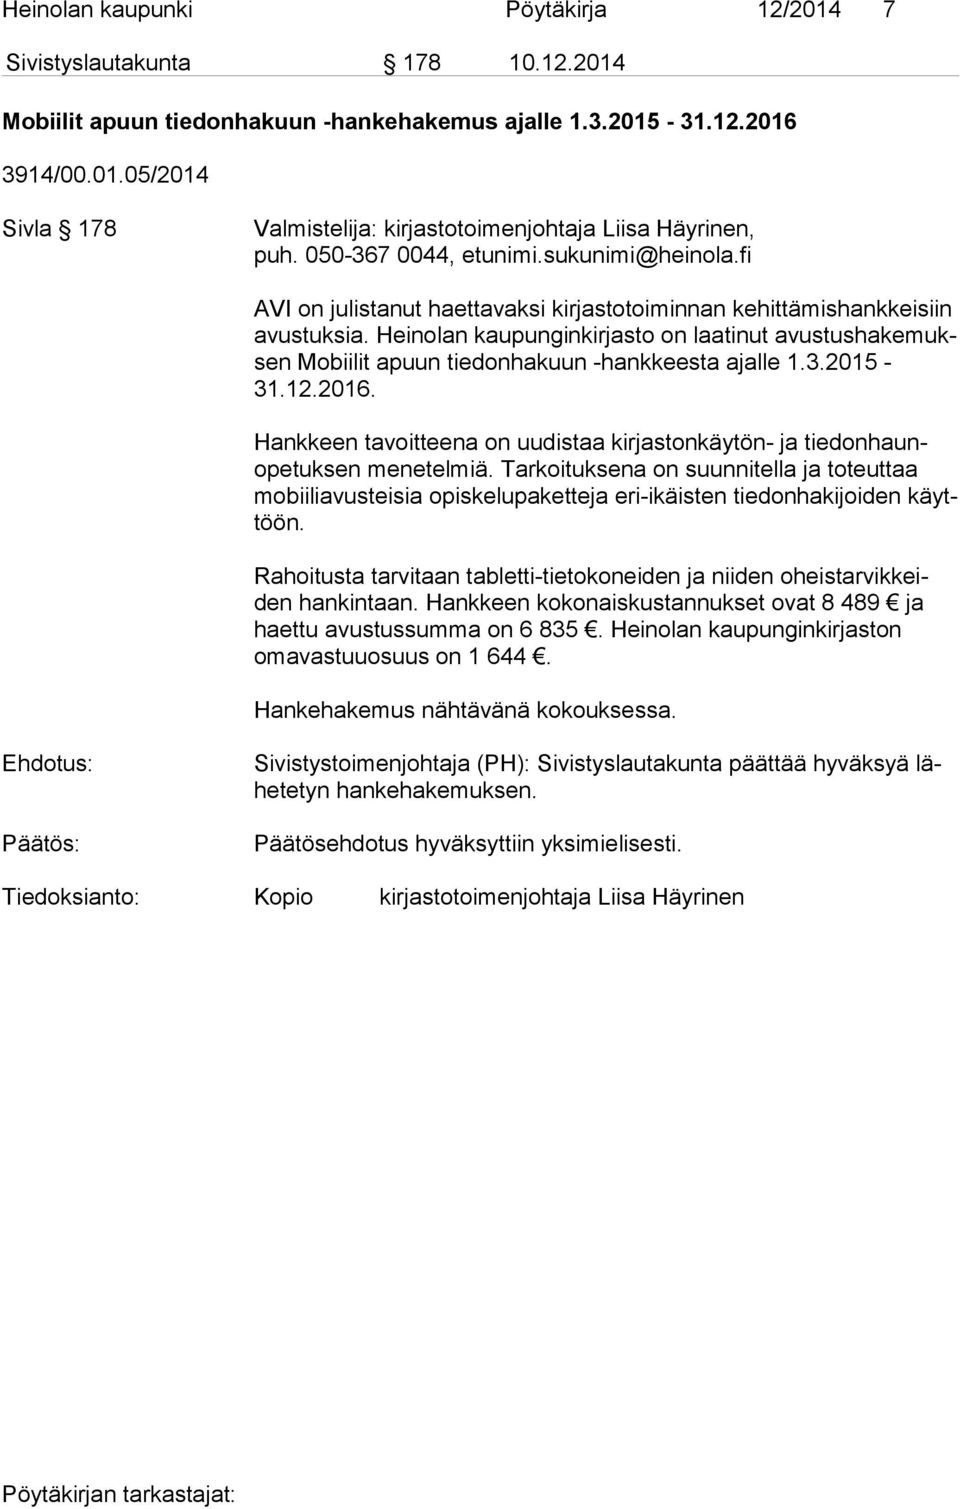 Heinolan kaupunginkirjasto on laatinut avus tus ha ke muksen Mobiilit apuun tiedonhakuun -hankkeesta ajalle 1.3.2015-31.12.2016.